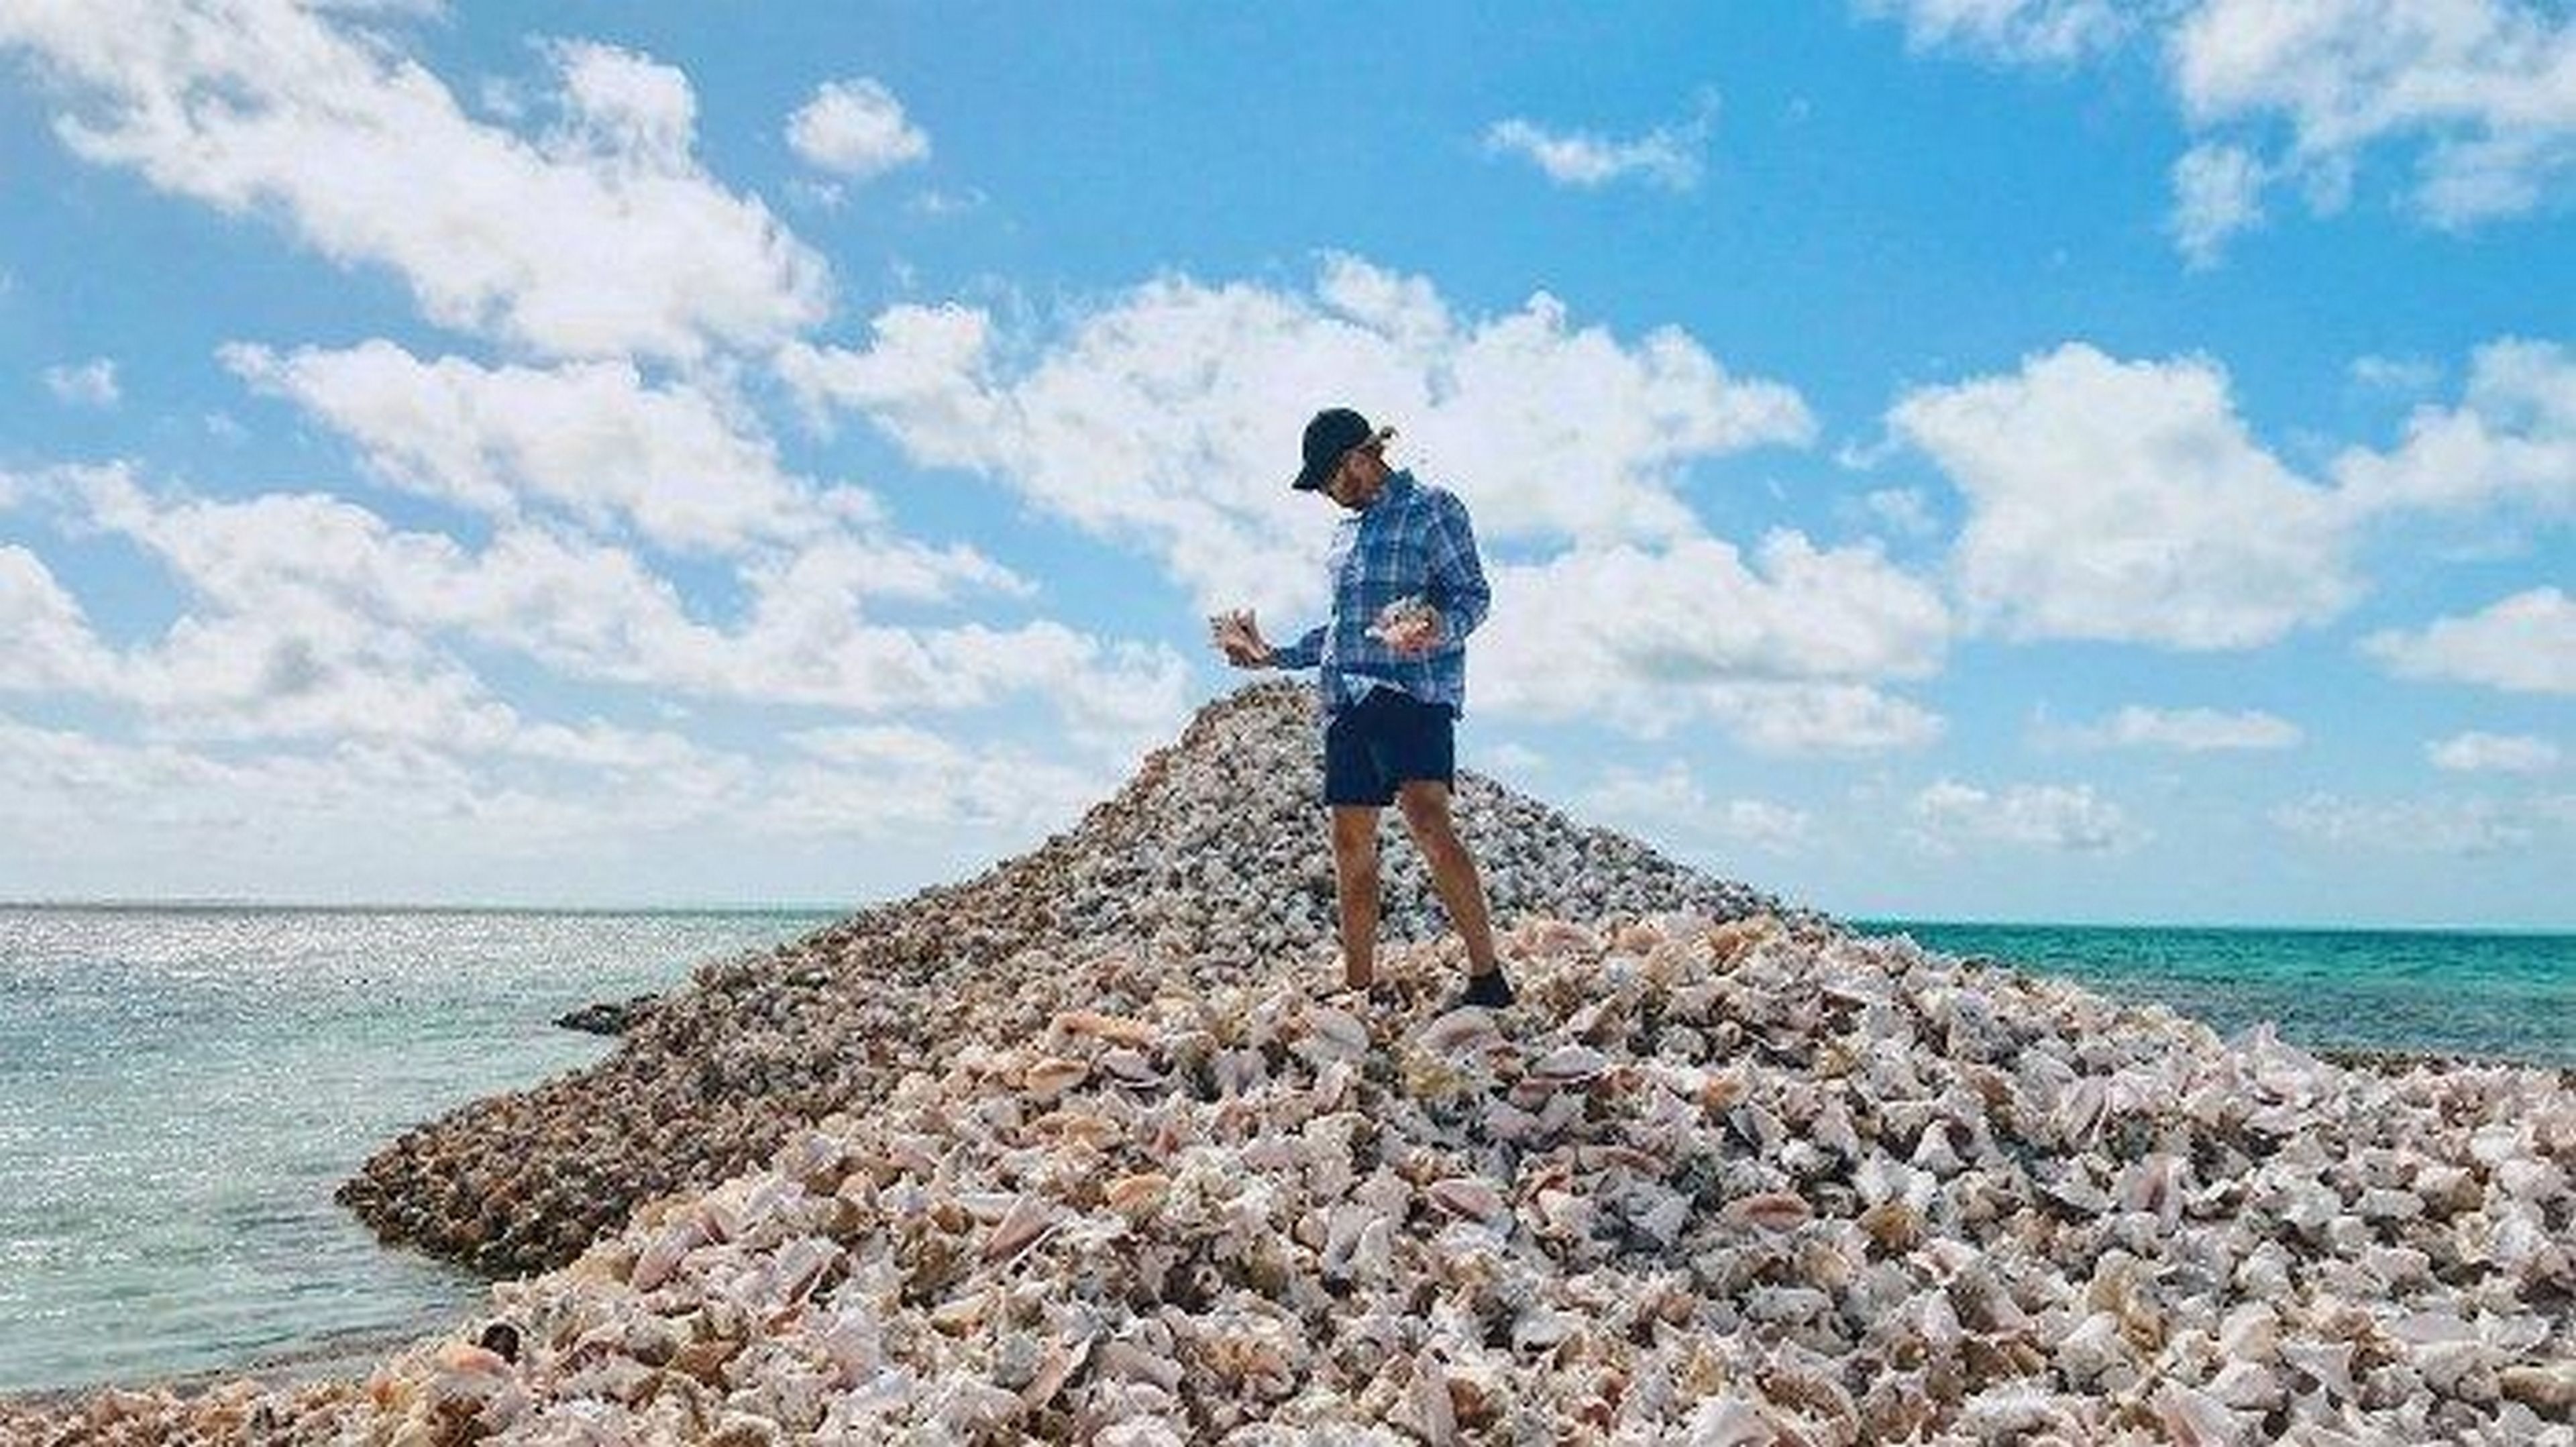 Conch Island, la isla artificial creada con millones de caracolas, algunas tienen 800 años